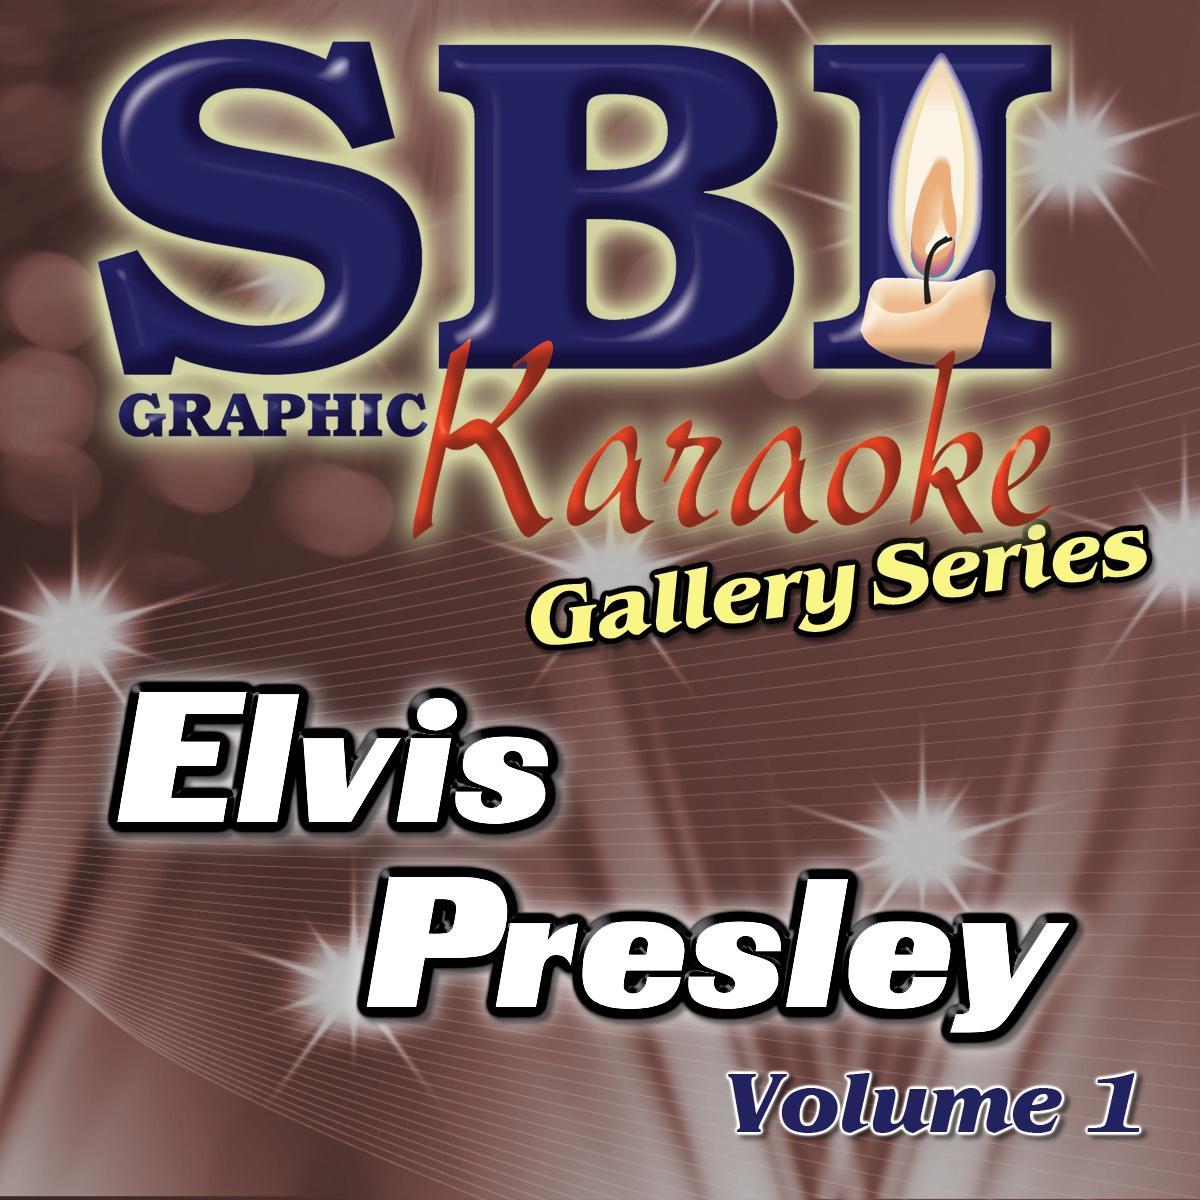 SBI Gallery Series Elvis Presley Vol 1 (Album)